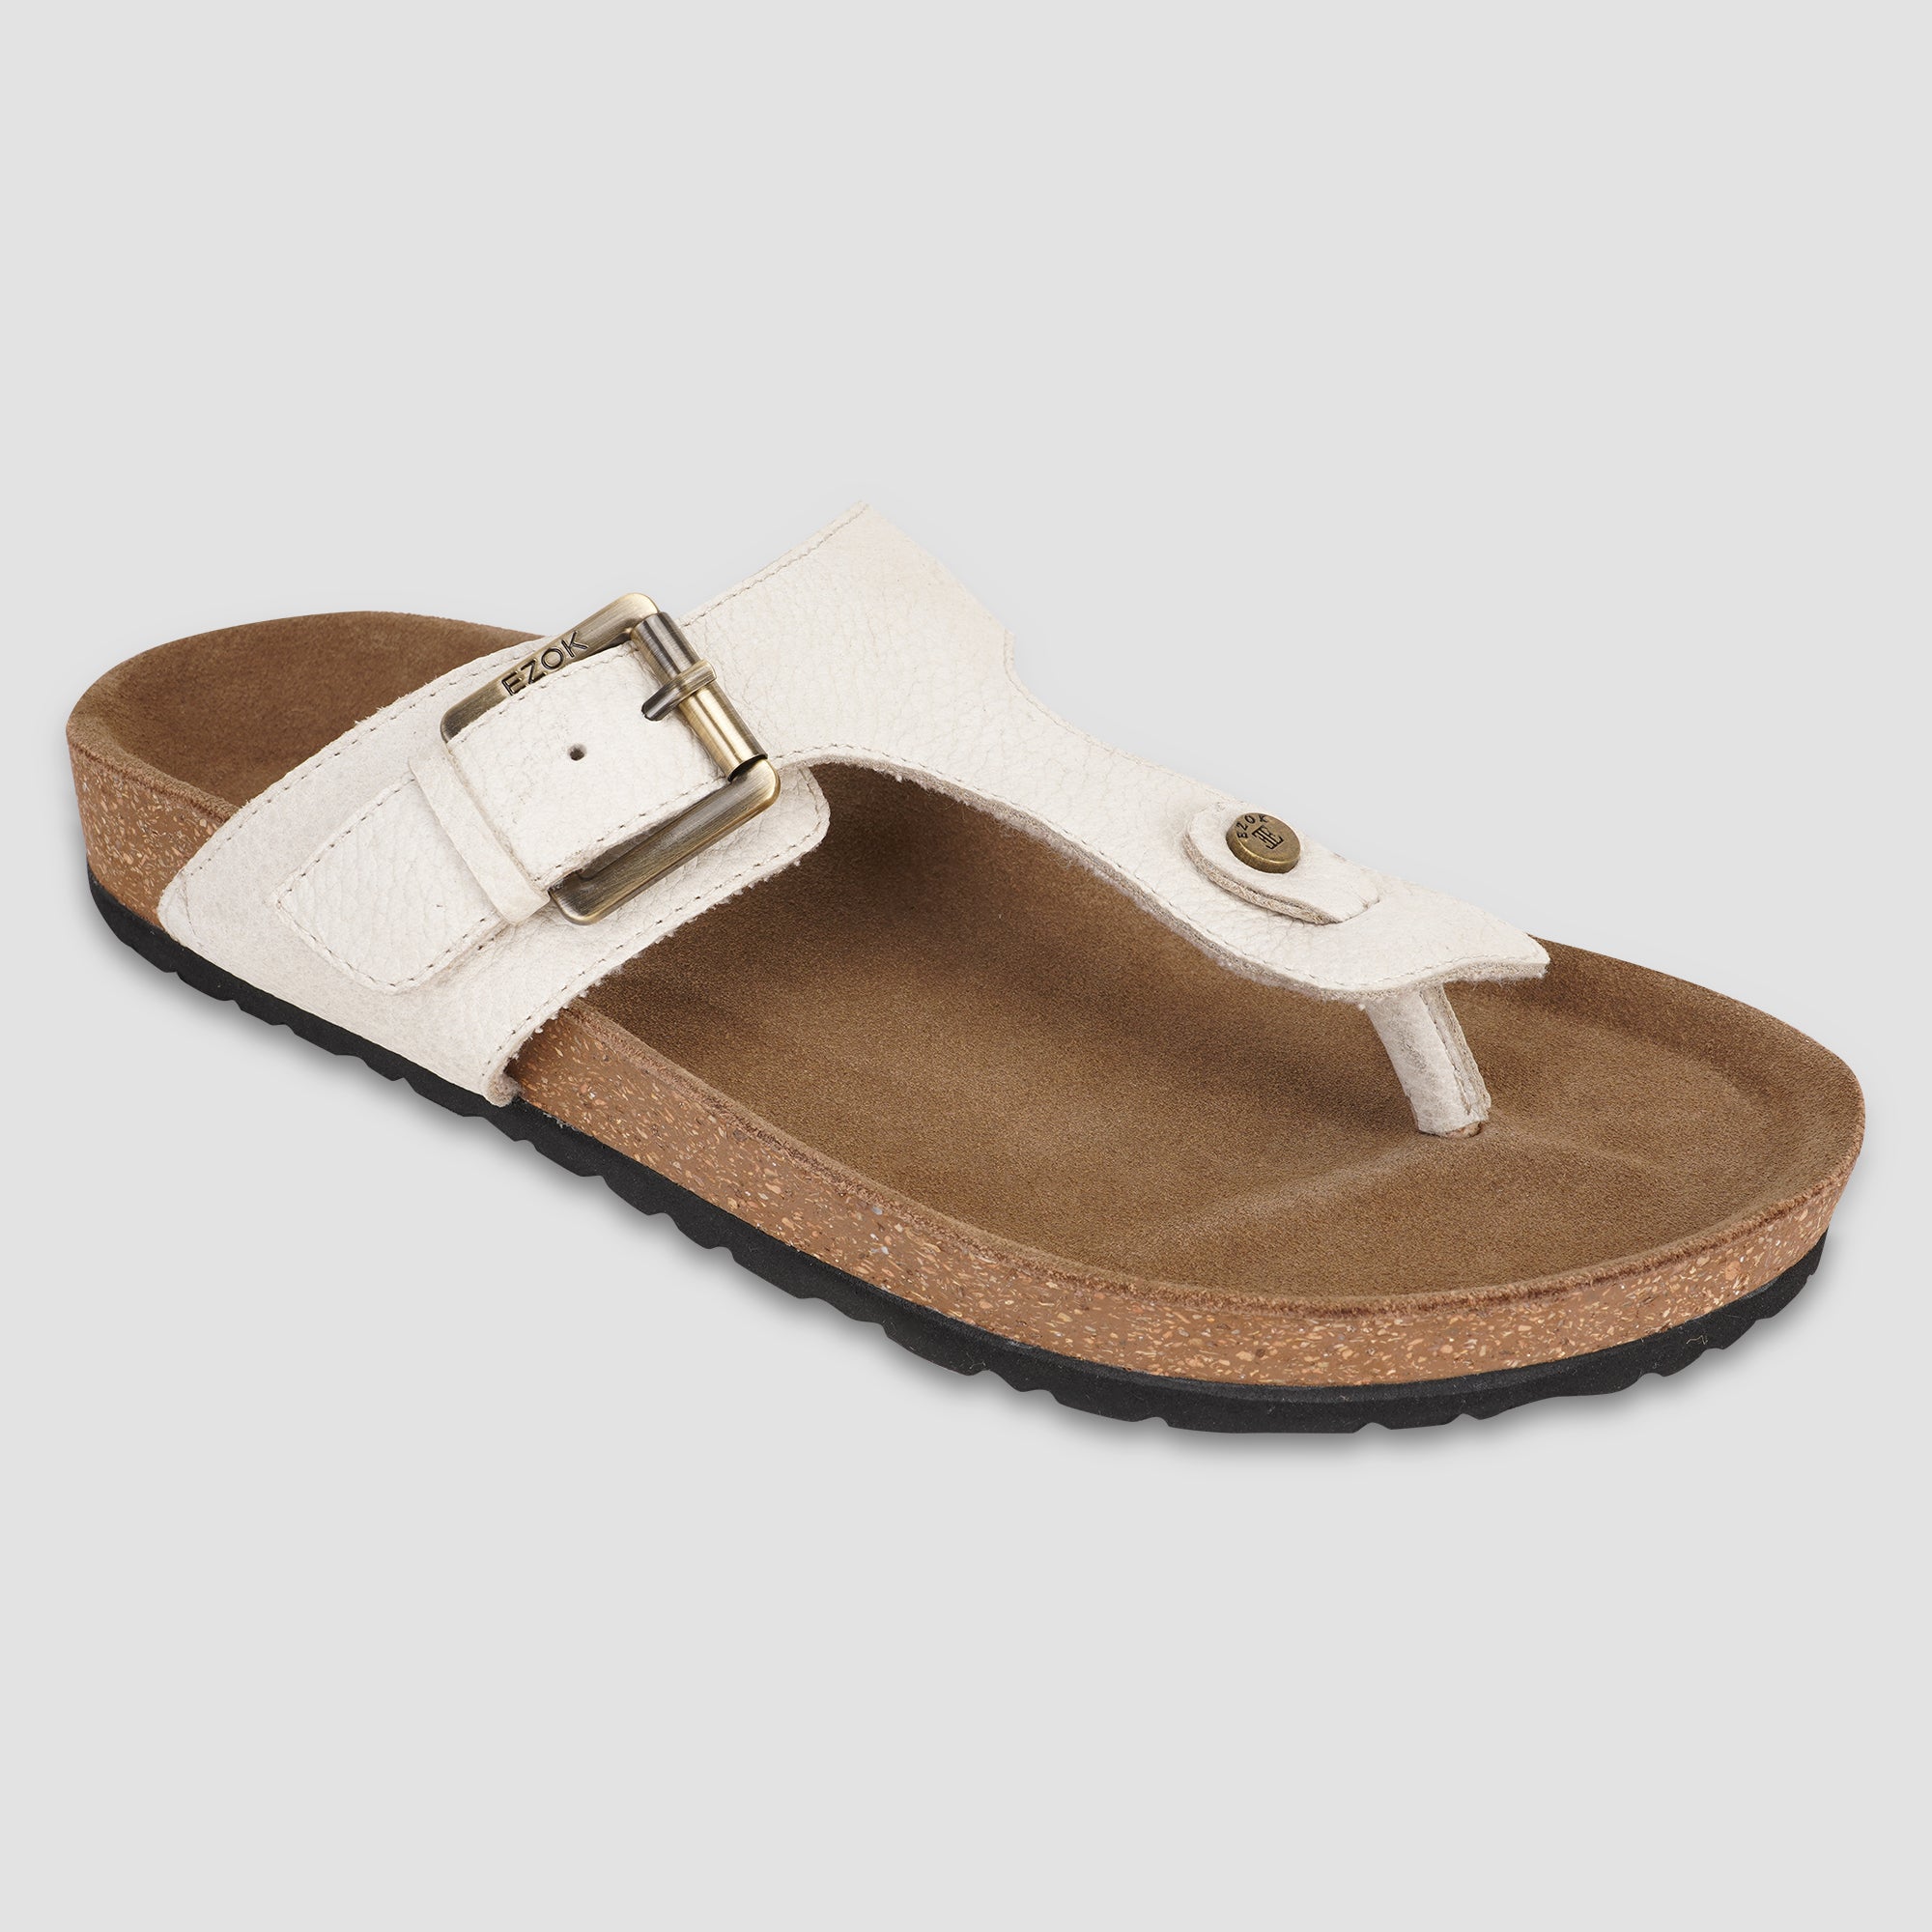 Ezok Beige Leather Sandal For Men